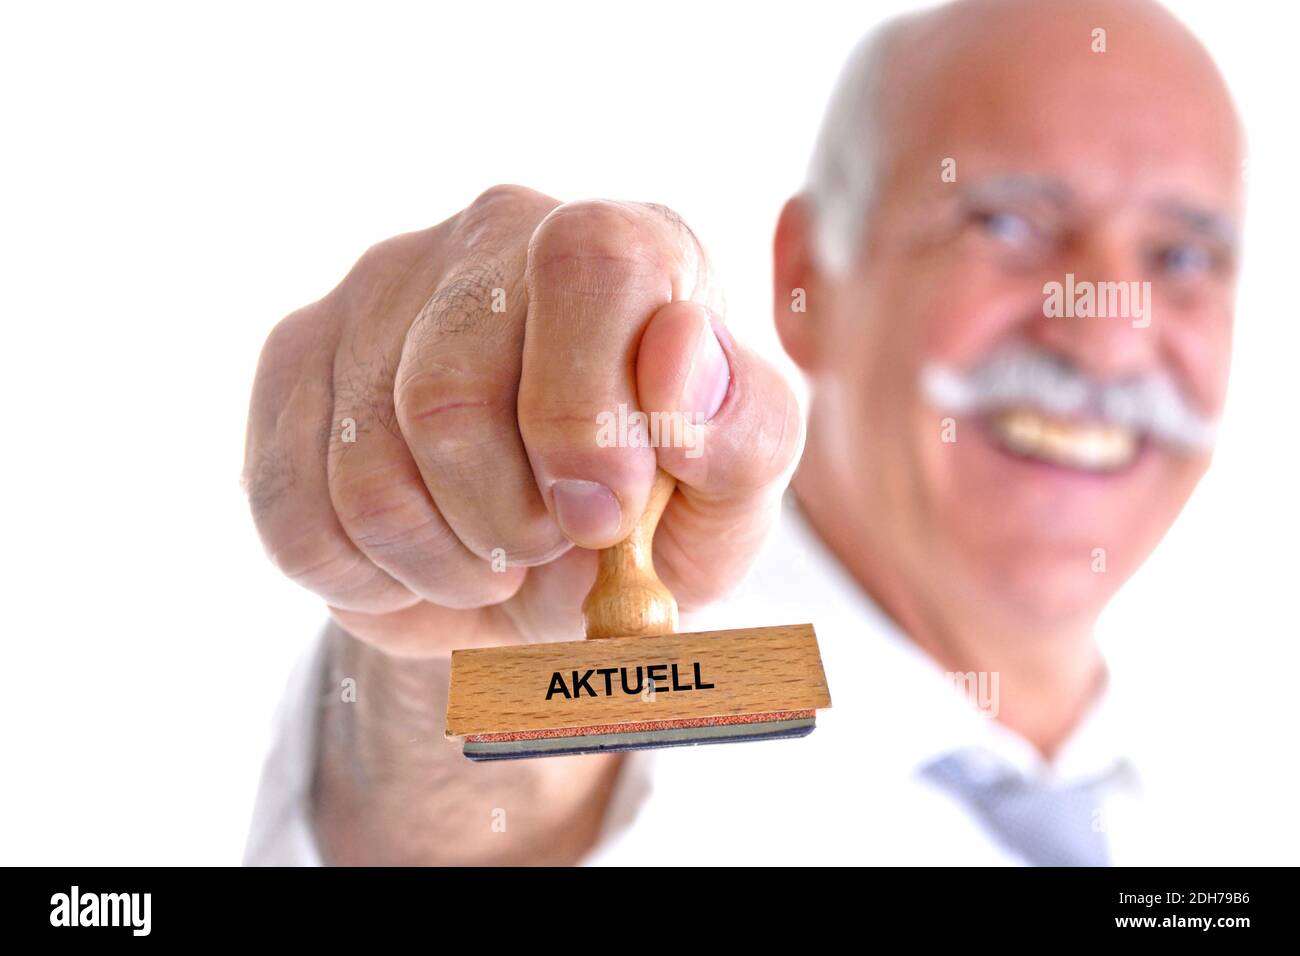 65, 70, Jahre, Mann hält Stempel in der Hand, Aufschrift: Aktuell, Stock Photo